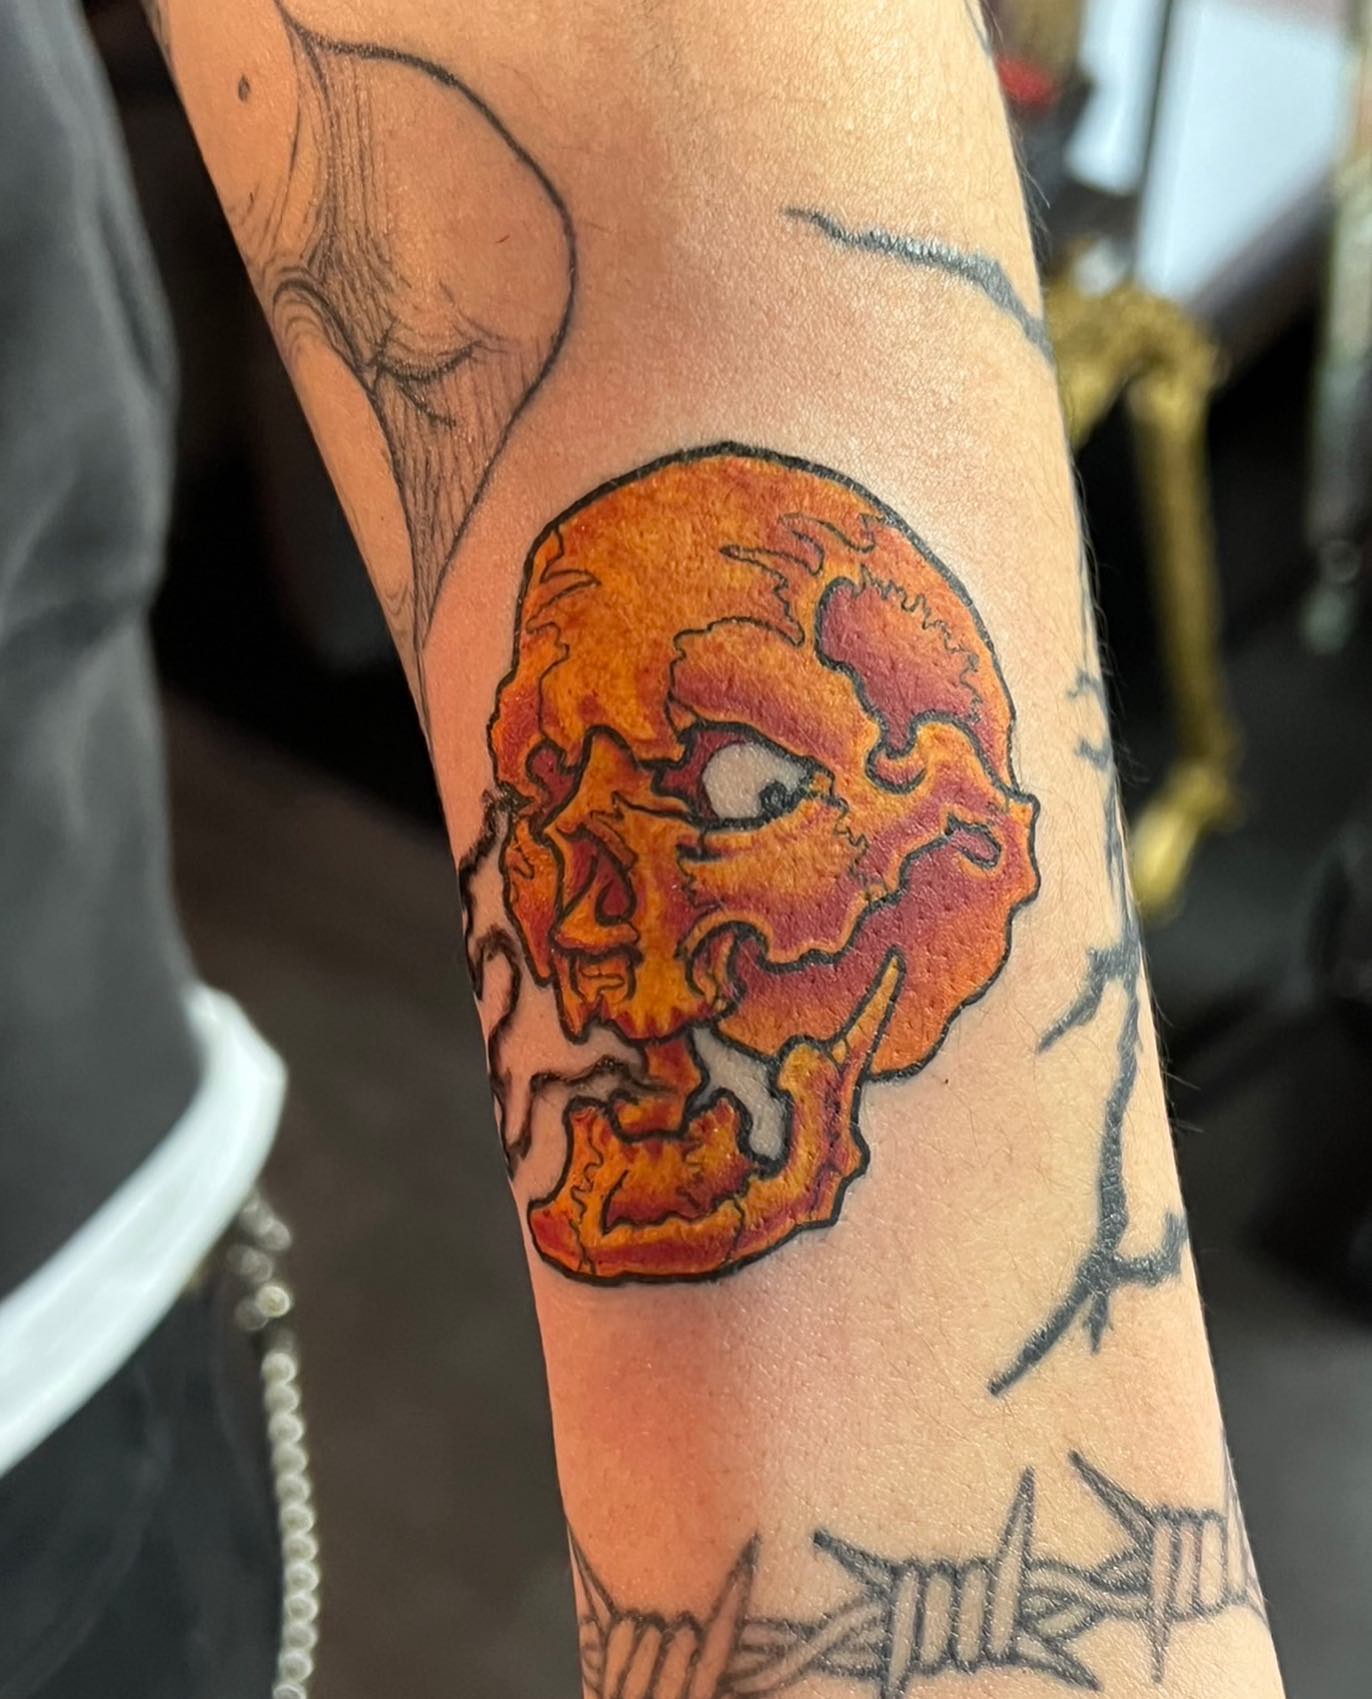 腕 #スカル#skull #skulltattoo #tattoo #ink #freehand #56 #56tattoo #horimasa #tokyo #color #スカル #ガイコツ #タトゥー #インク #スミ #イレズミ #フリーハンド #カラー #ホリマサ #トウキョウ #骸骨 #刺青 #墨 #彫雅 #東京